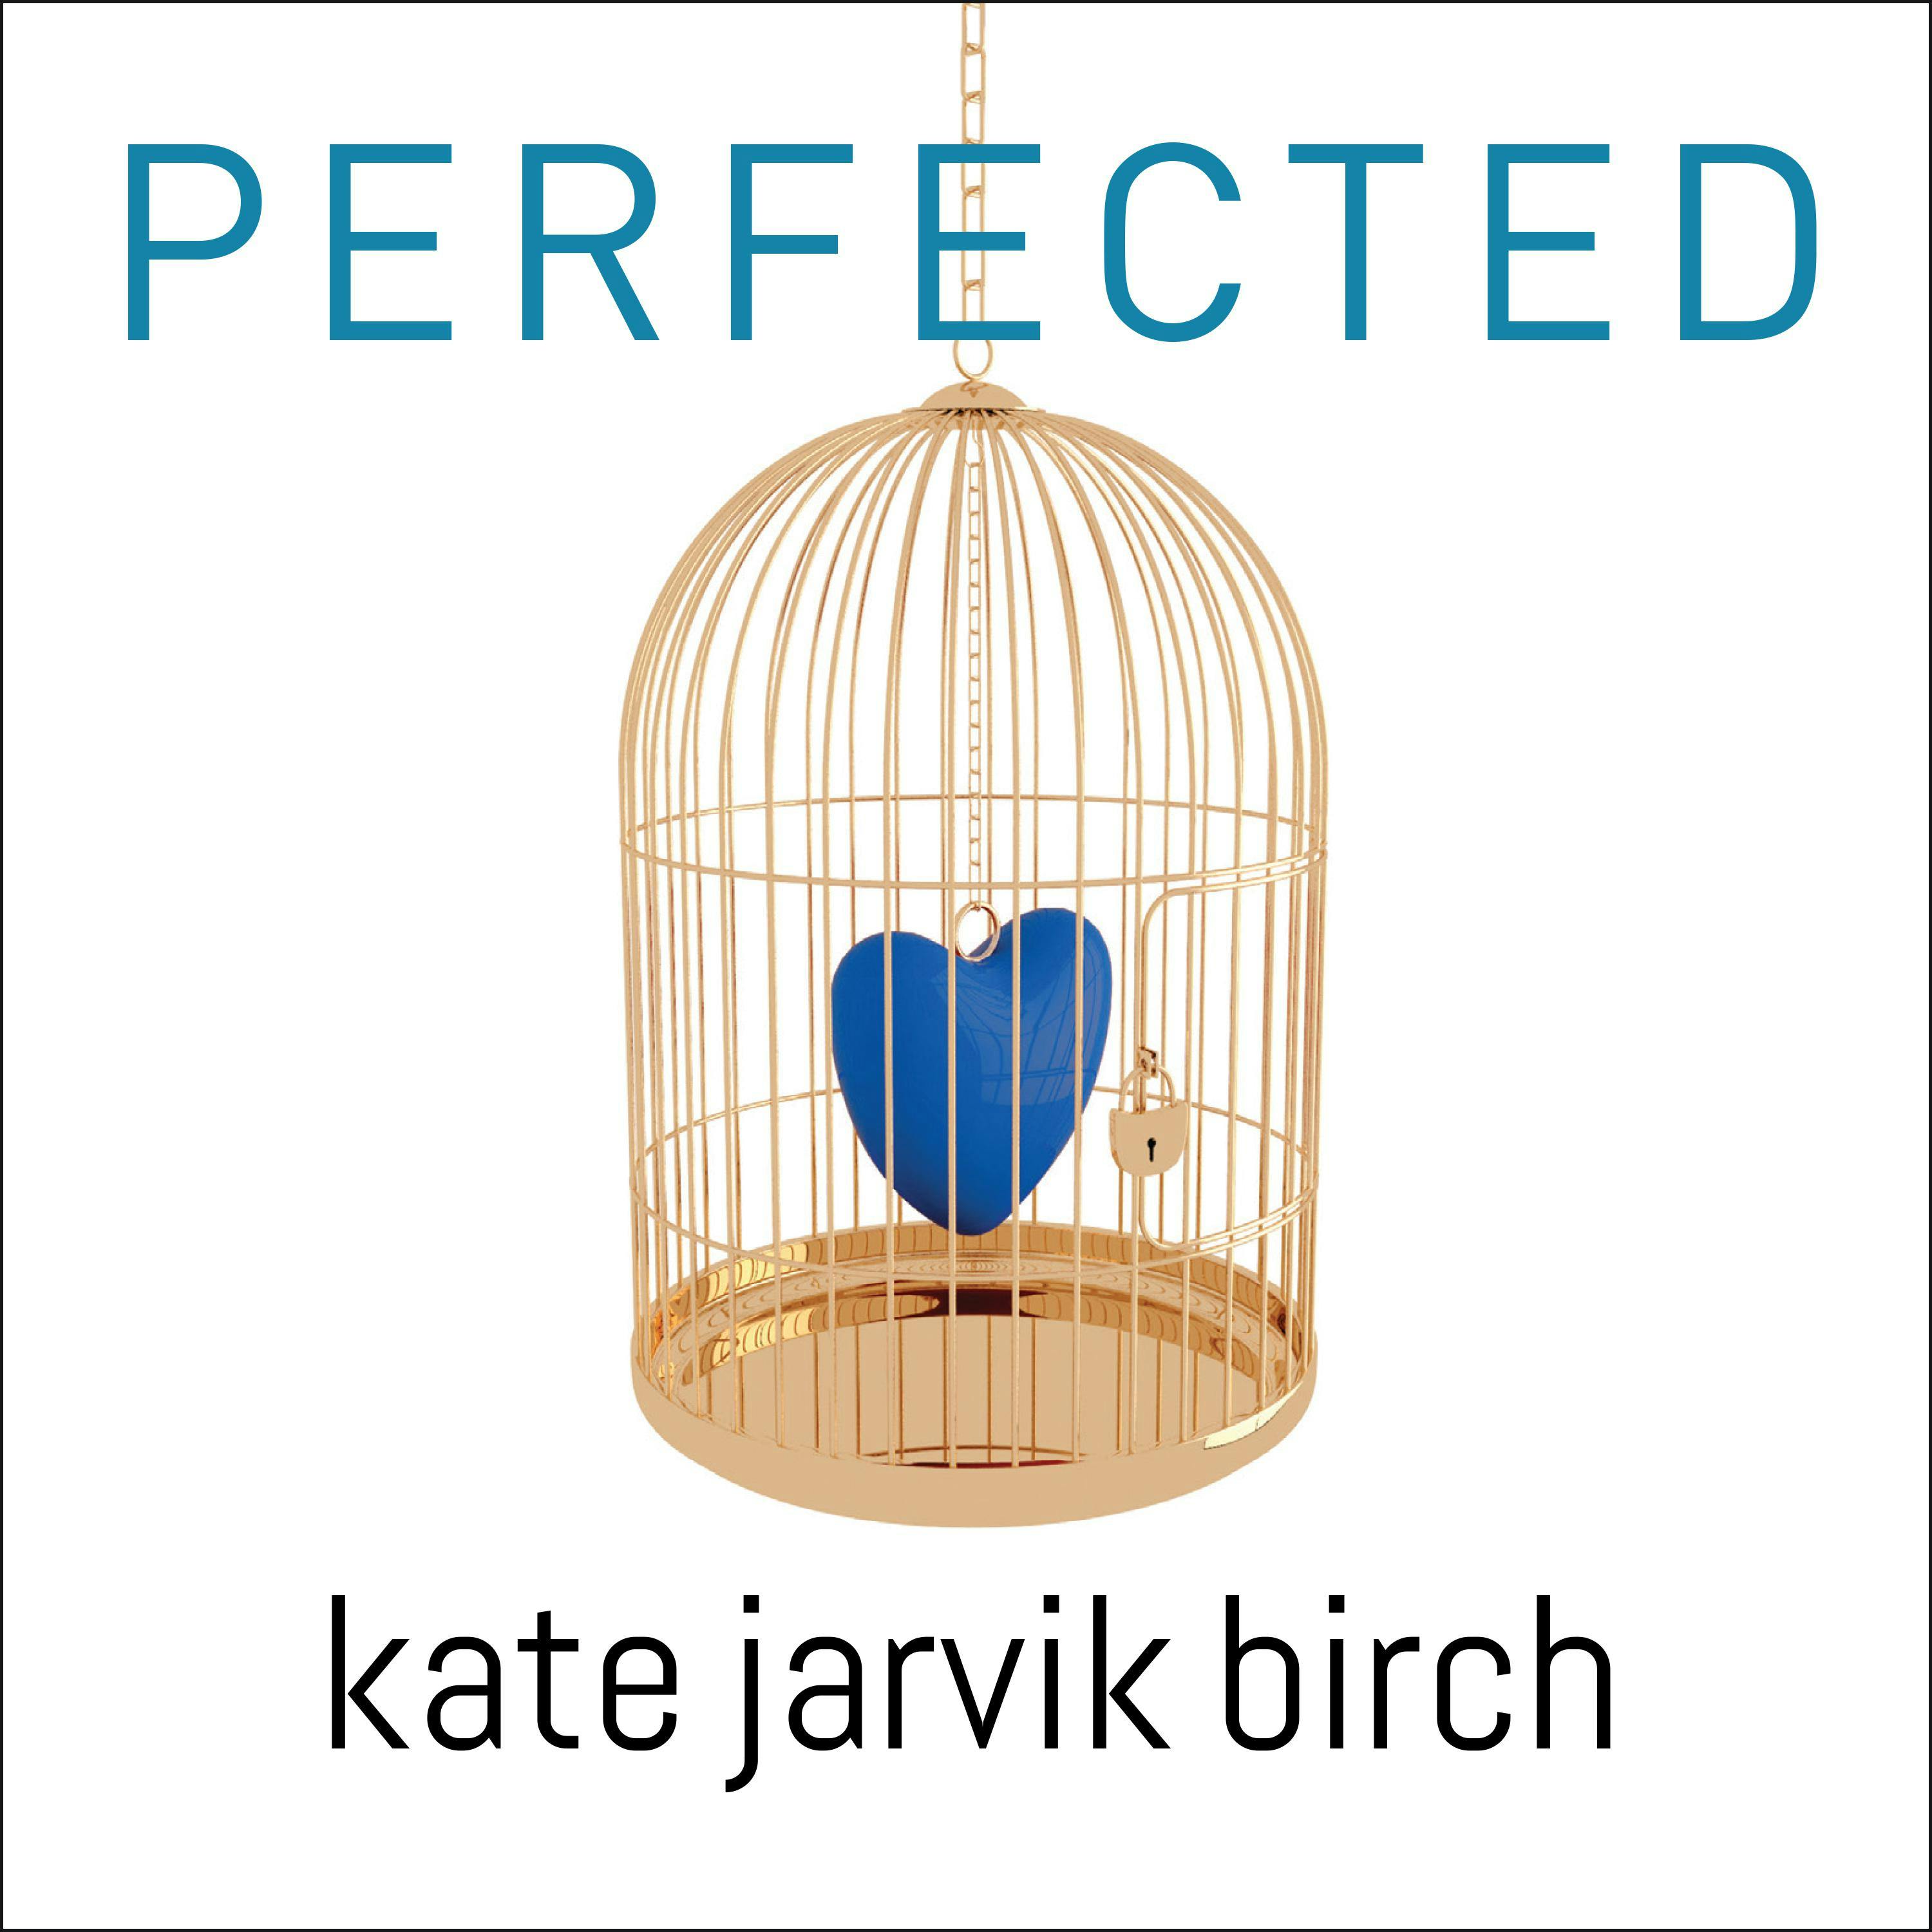 Perfected - Kate Jarvik Birch